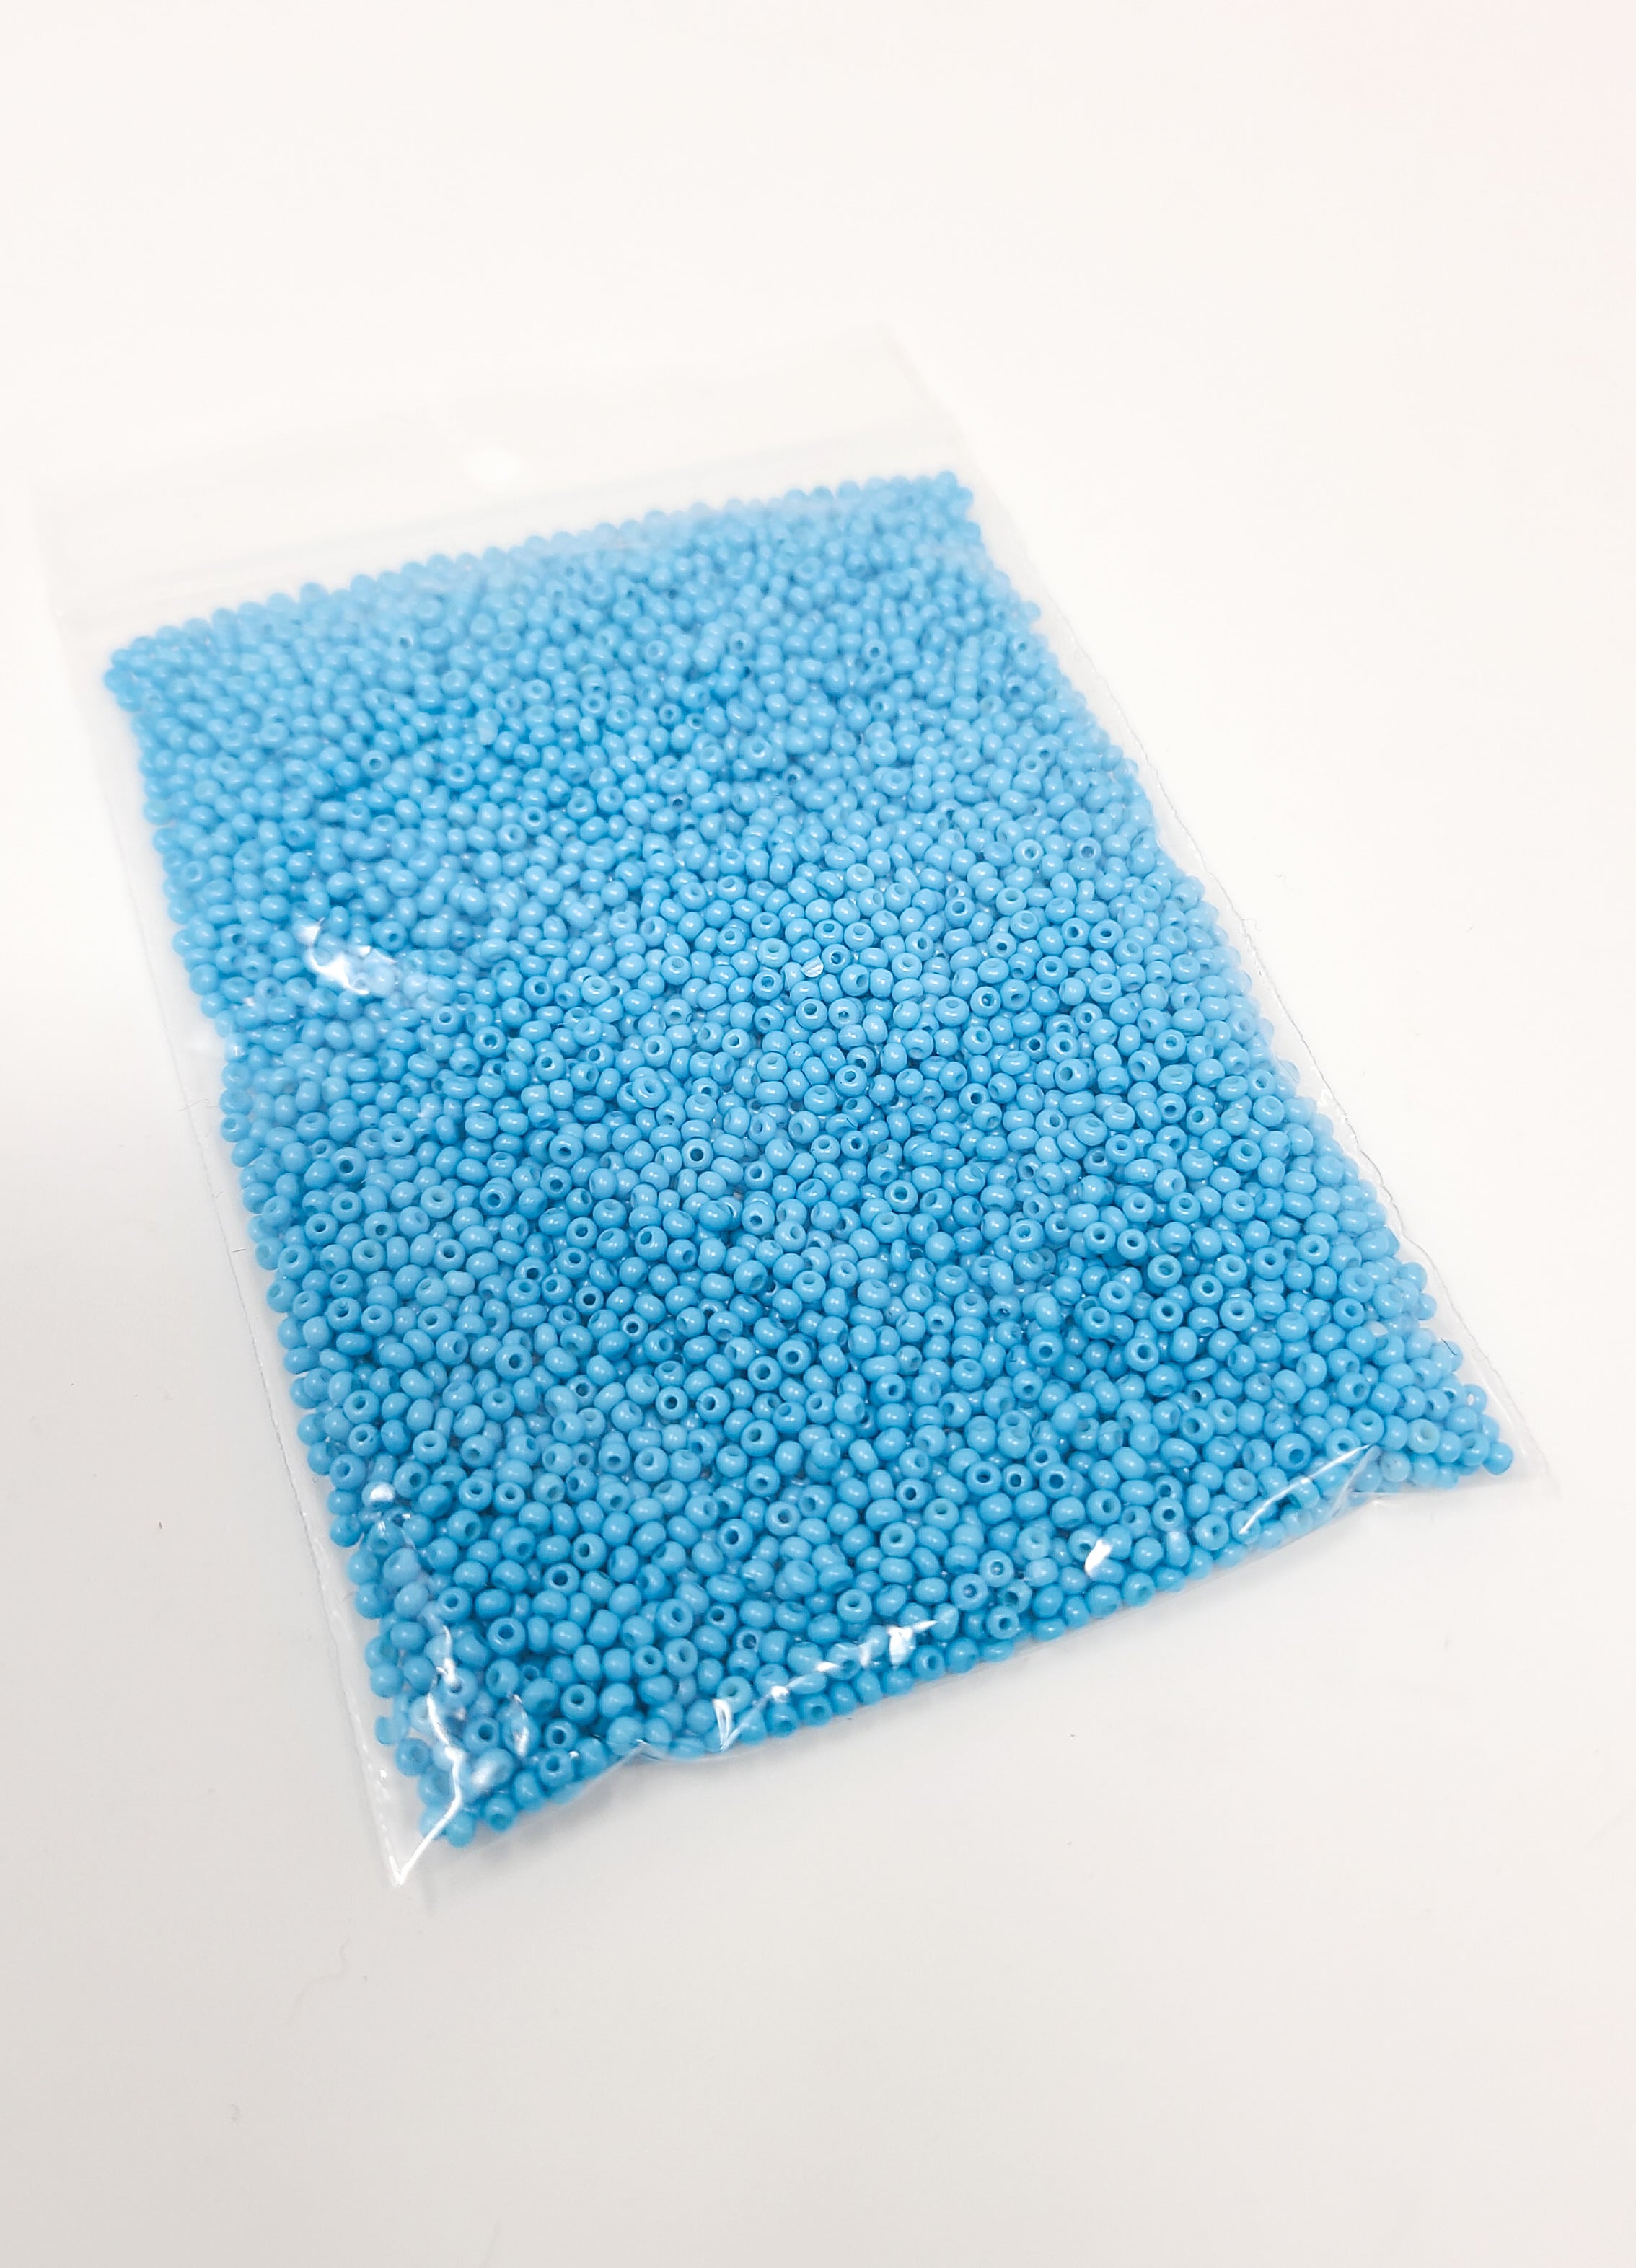 Glass Beads - Aqua